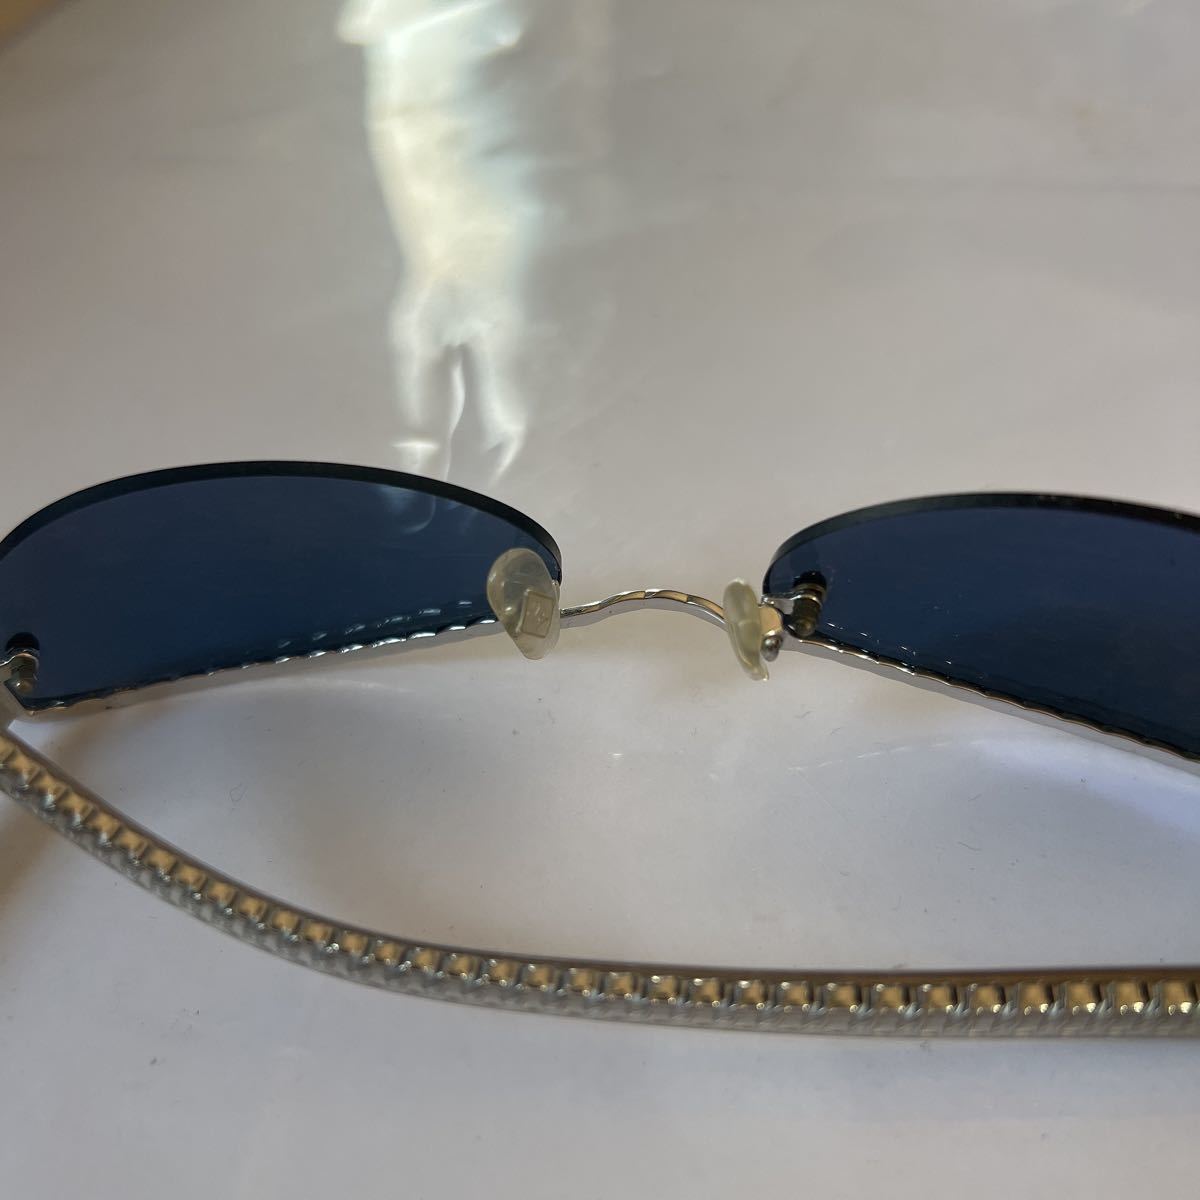  Jean-Paul Gaultier солнцезащитные очки 1990 год ~2000 год на линзы раз ввод б/у дизайнерский бренд 